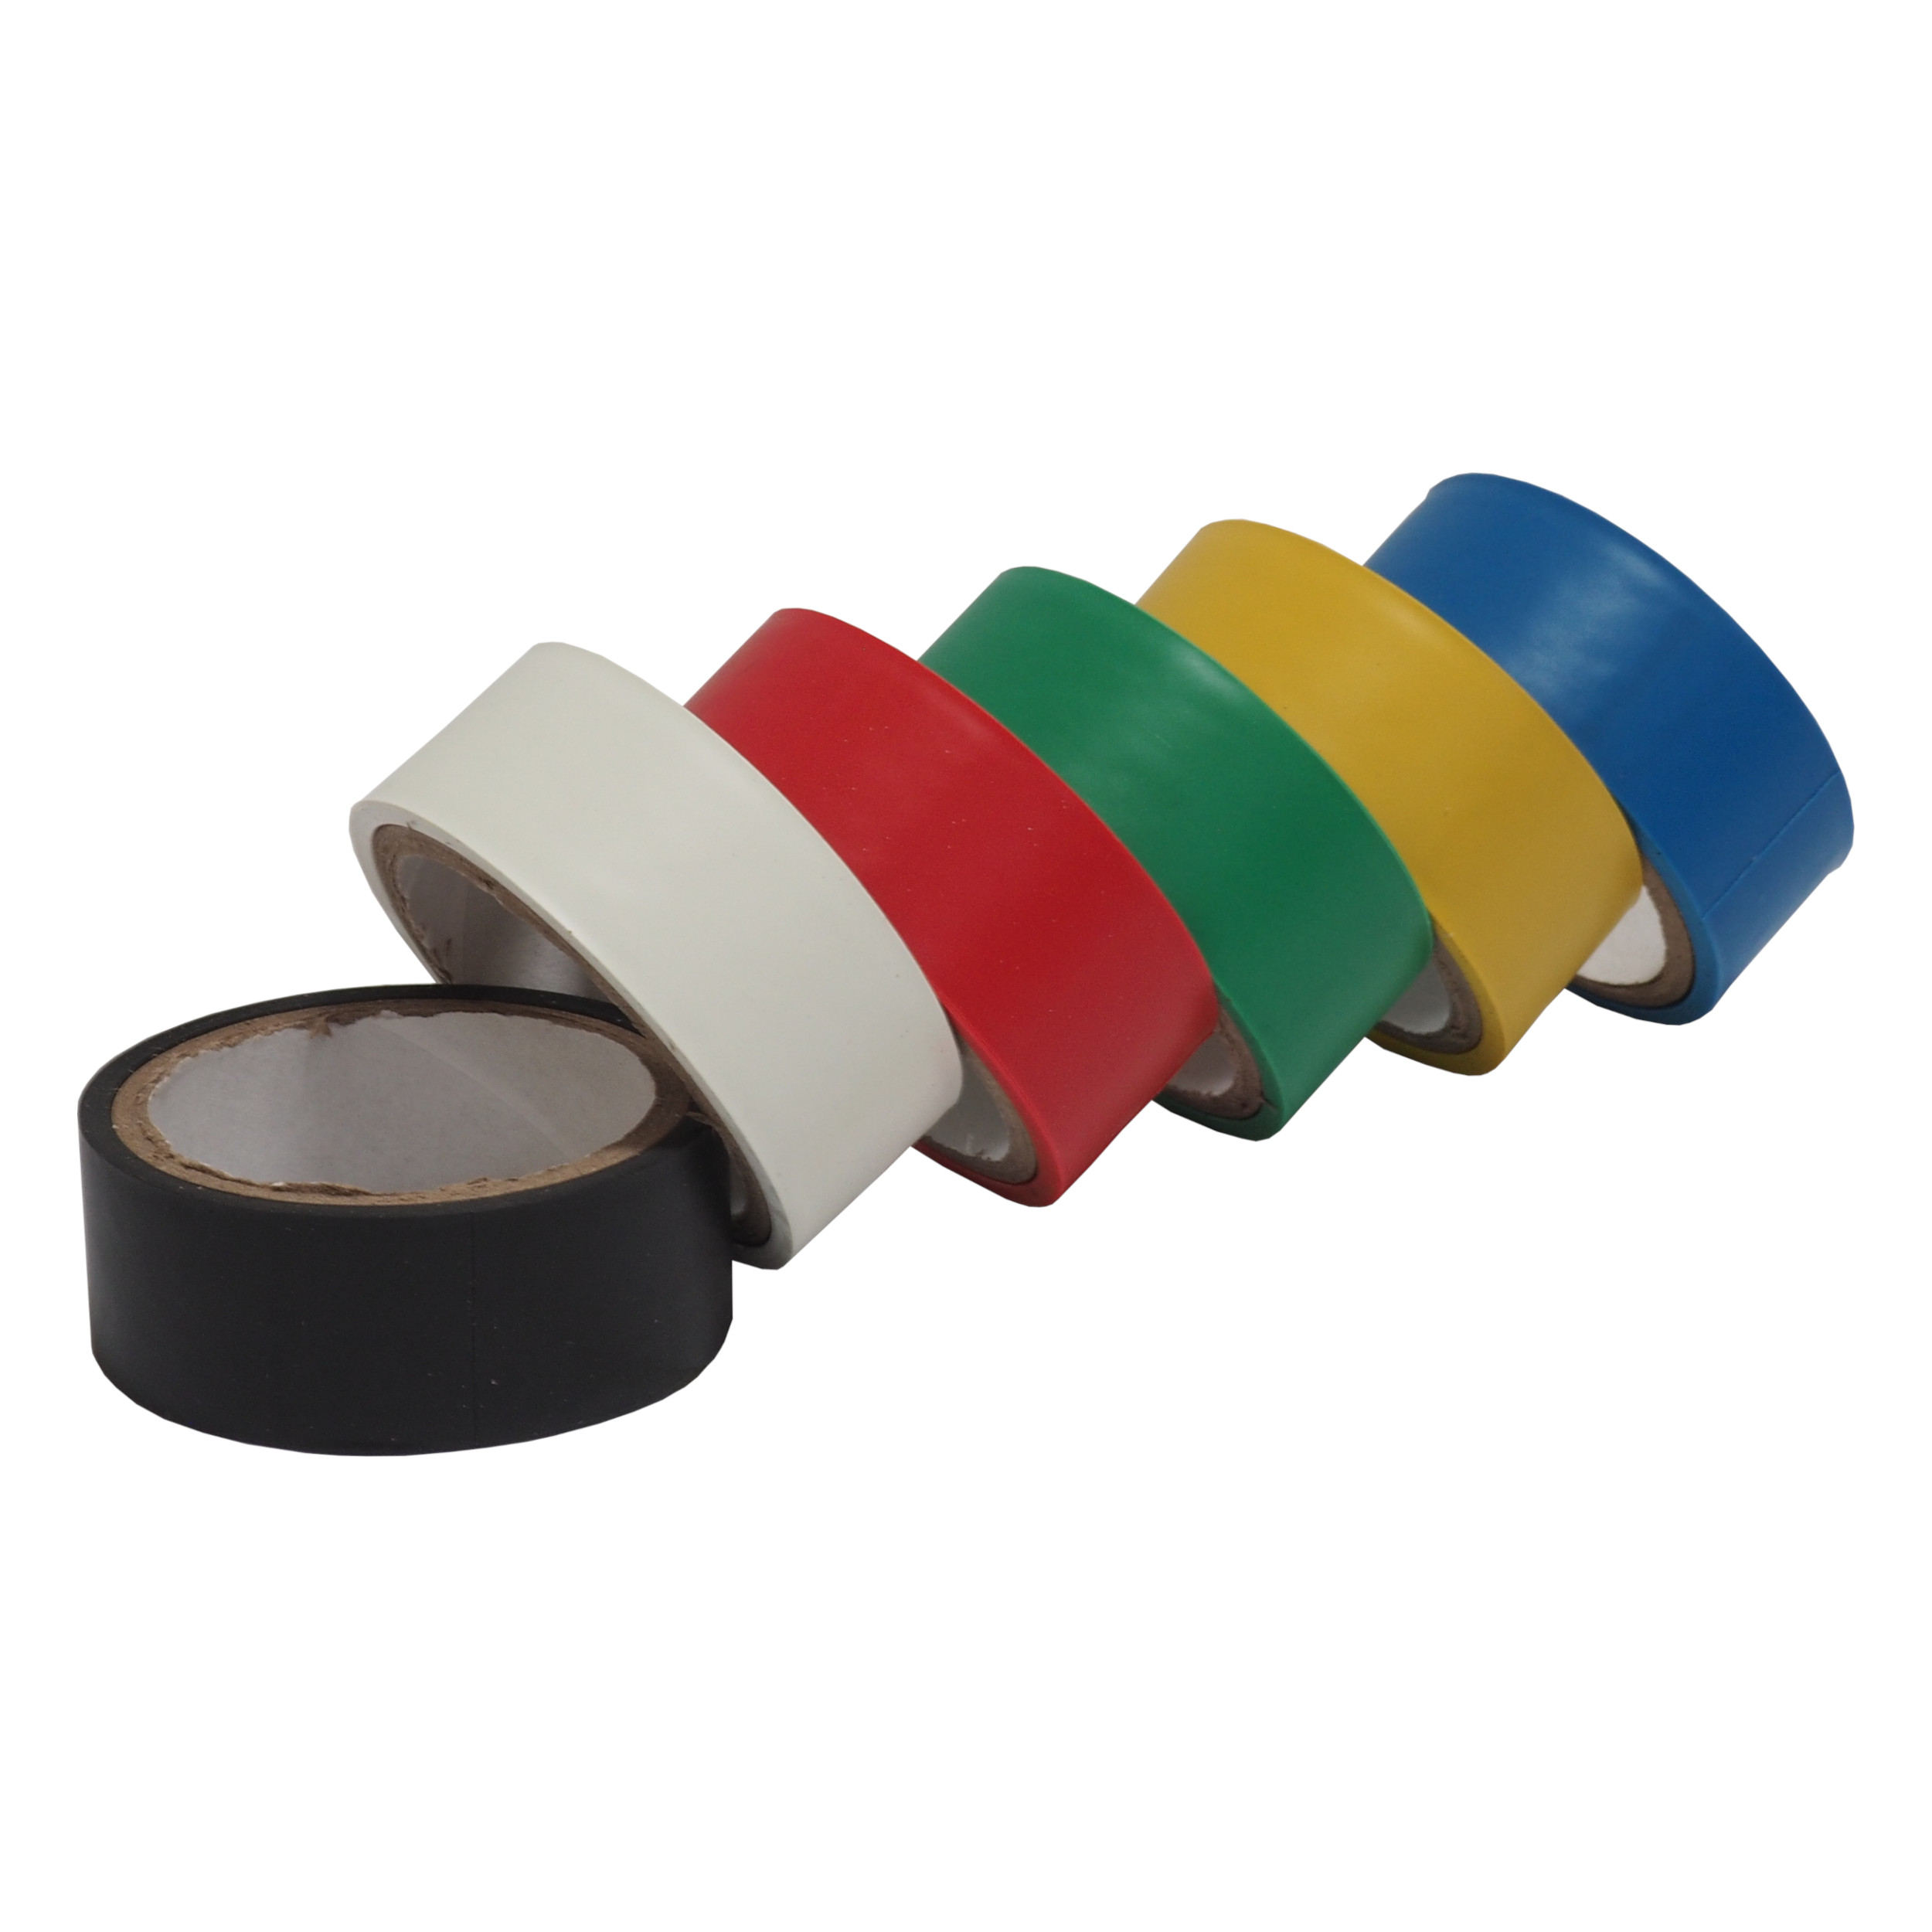 TOPTRADE páska elektroizolační, barevná, 19 x 0,13 mm x 3 m, set 6 ks 0.11 Kg TOP Sklad4 701423 2047